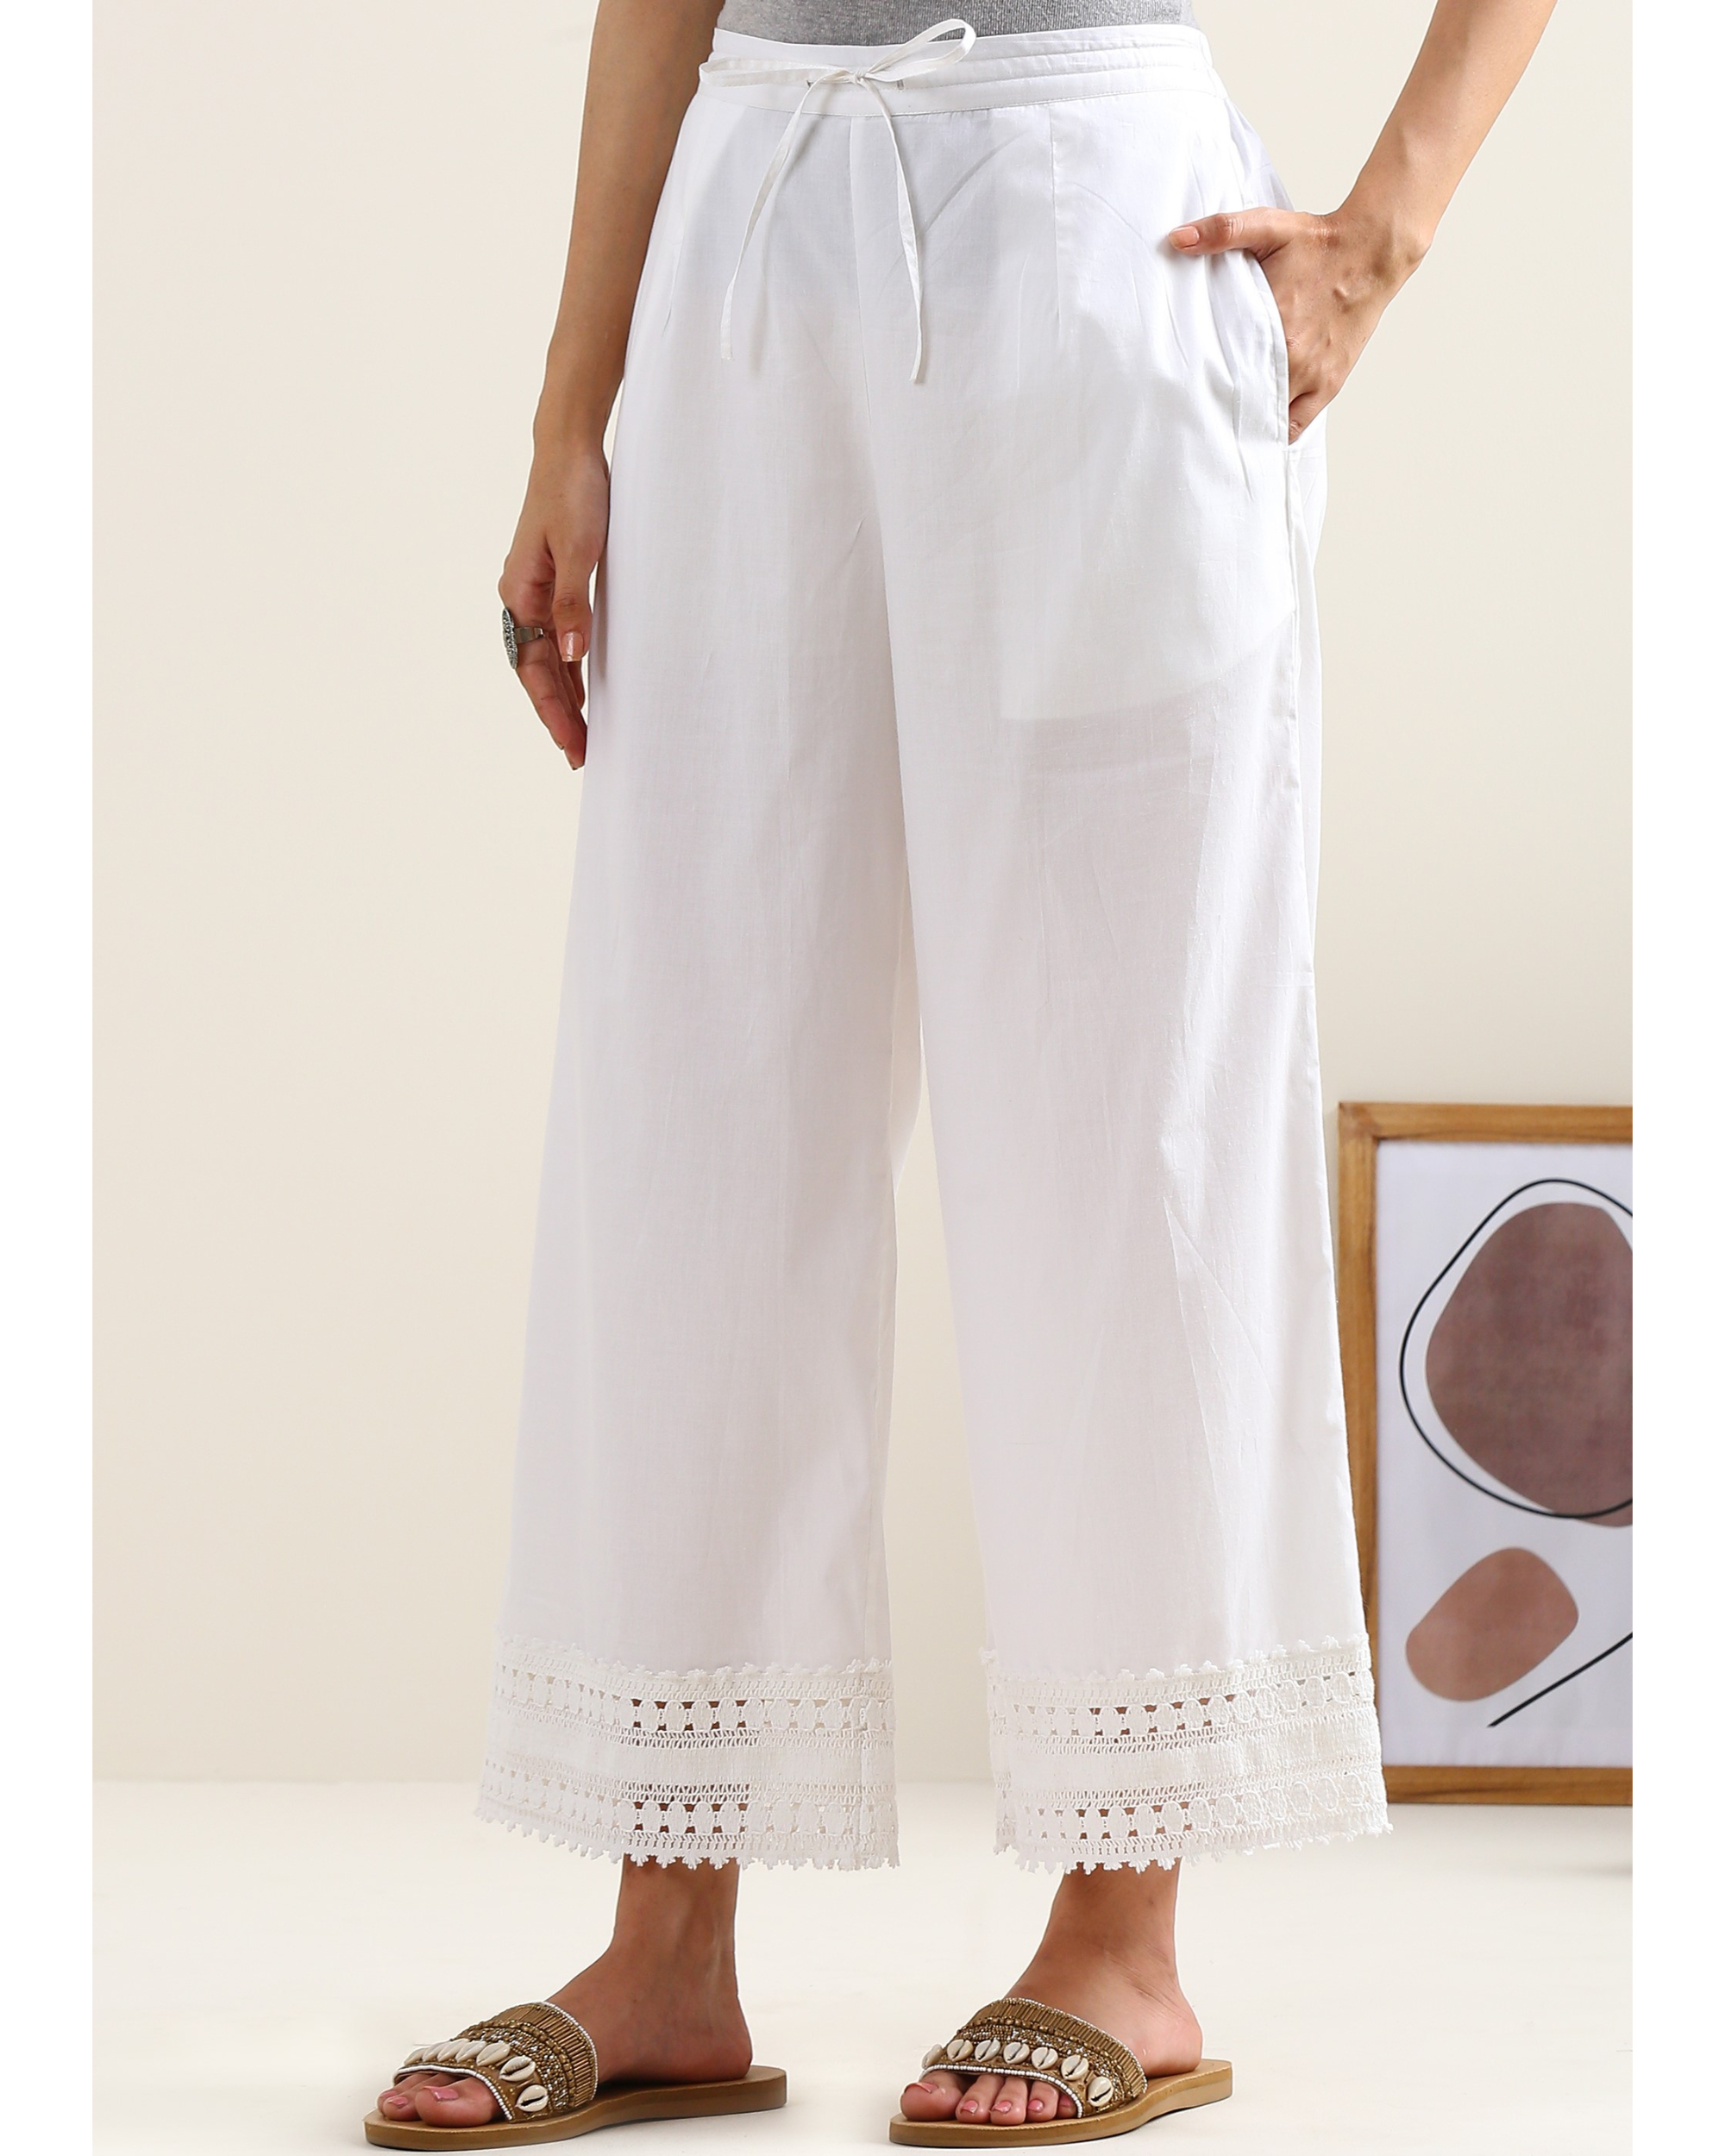 White cotton lace pants